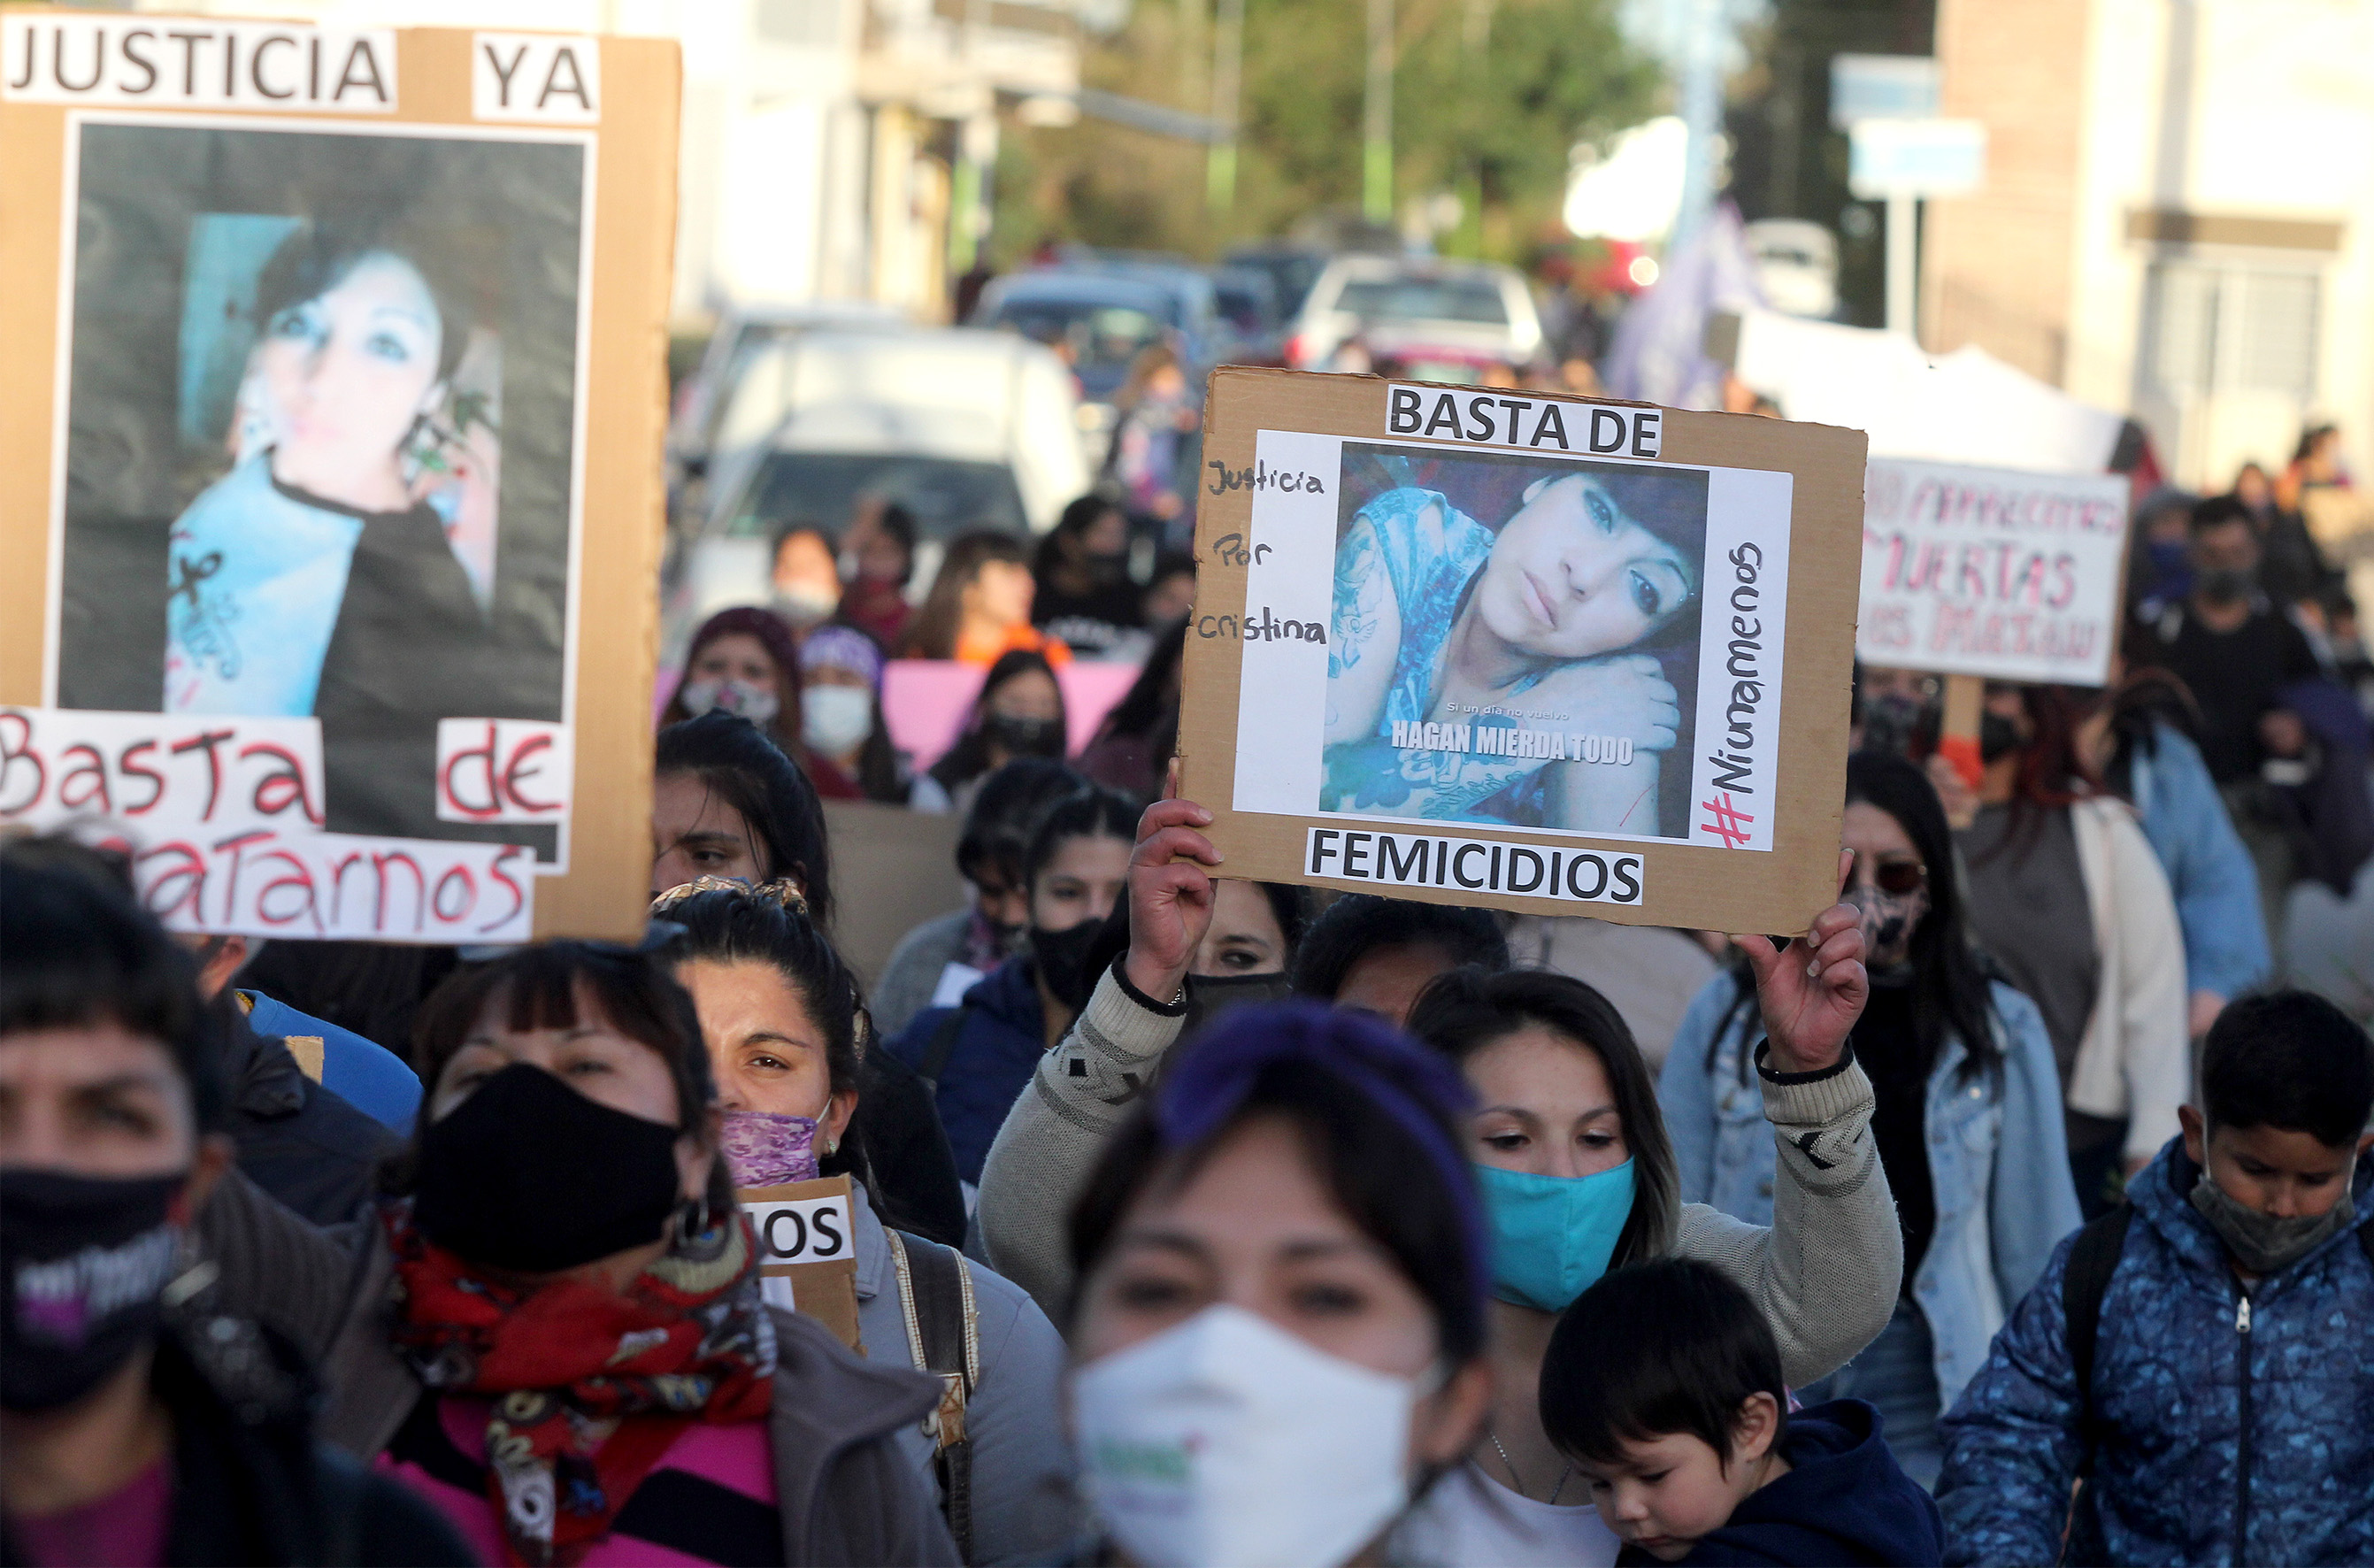 El hecho ocurrió el 1 de mayo pasado en Centenario. Hubo una gran marcha en reclamo de justicia. Foto Oscar Livera.